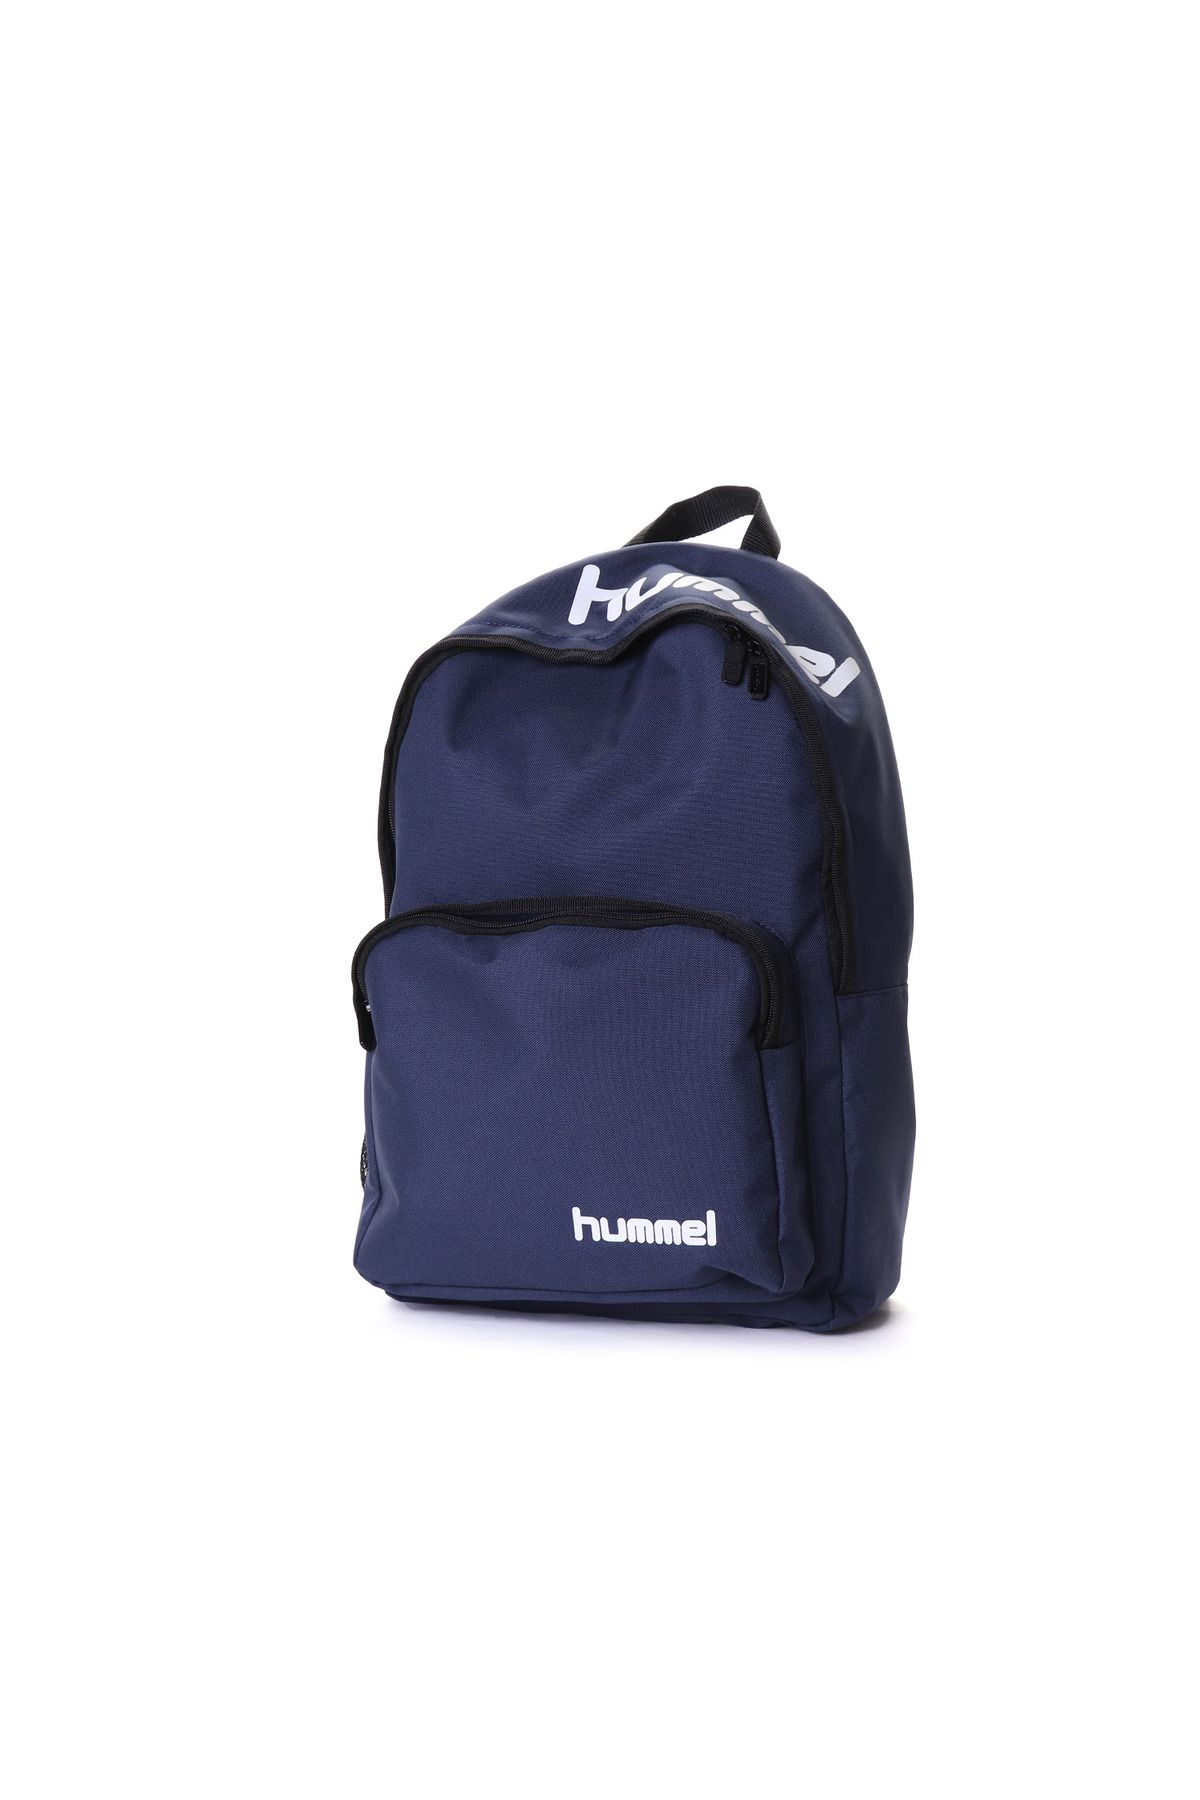 hummel Polyester Mavi Unisex Sırt Çantası 980180-7459 Hmllıone Backpack